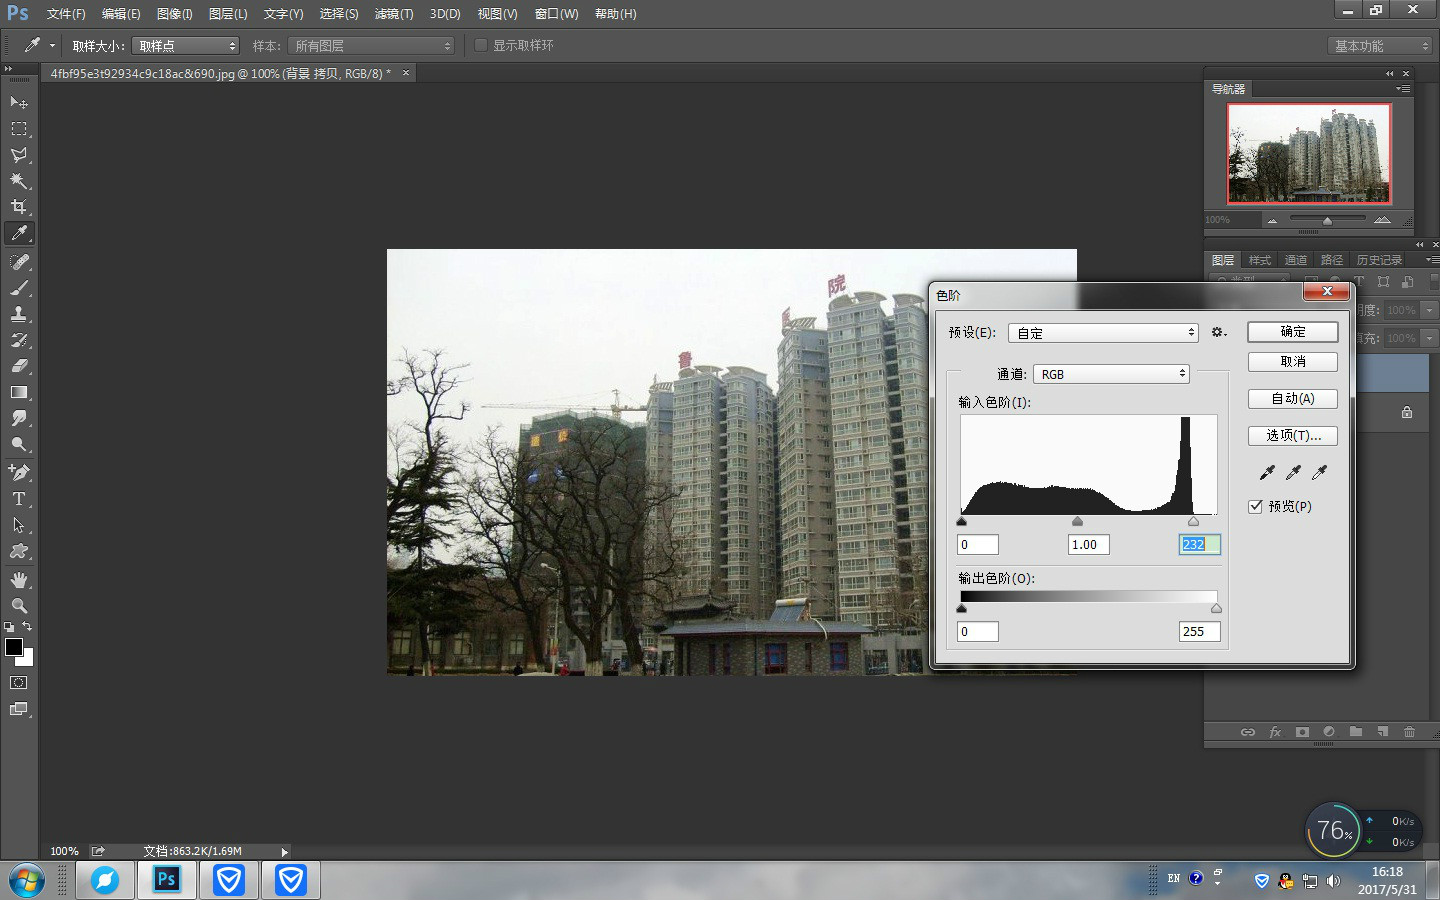 以photoshop cc2014软件为例,校正变形图片的方法是: 1,打开ps软件,"